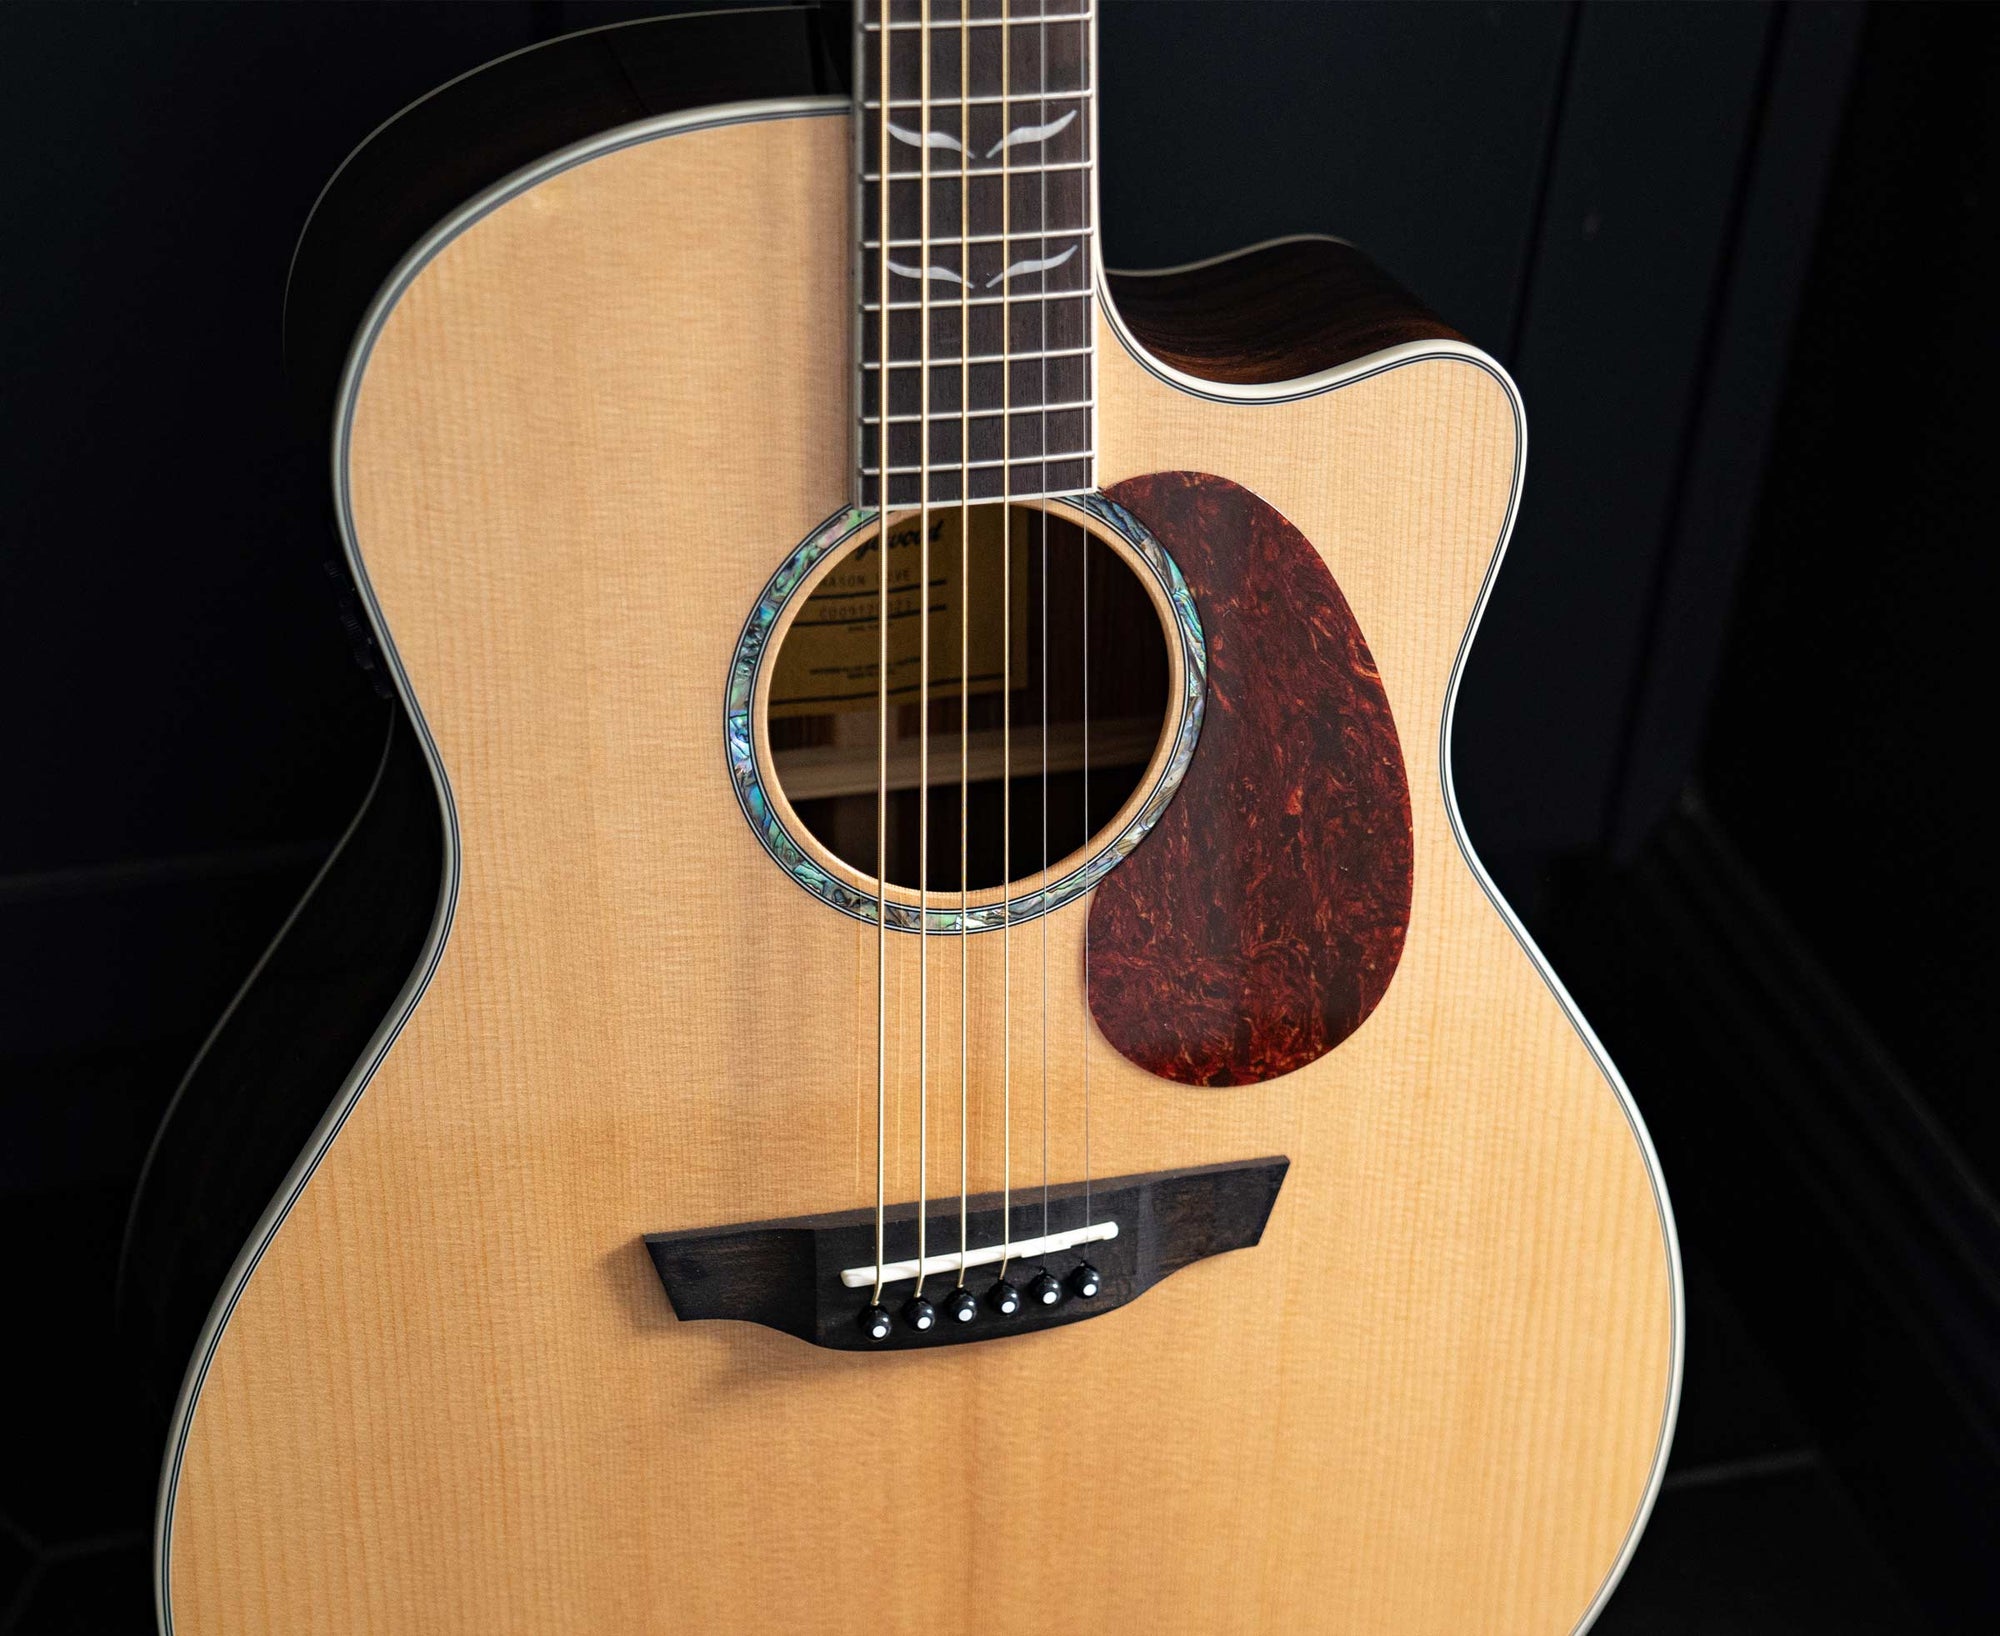 Closeup of an Orangewood Mason guitar with a pick guard